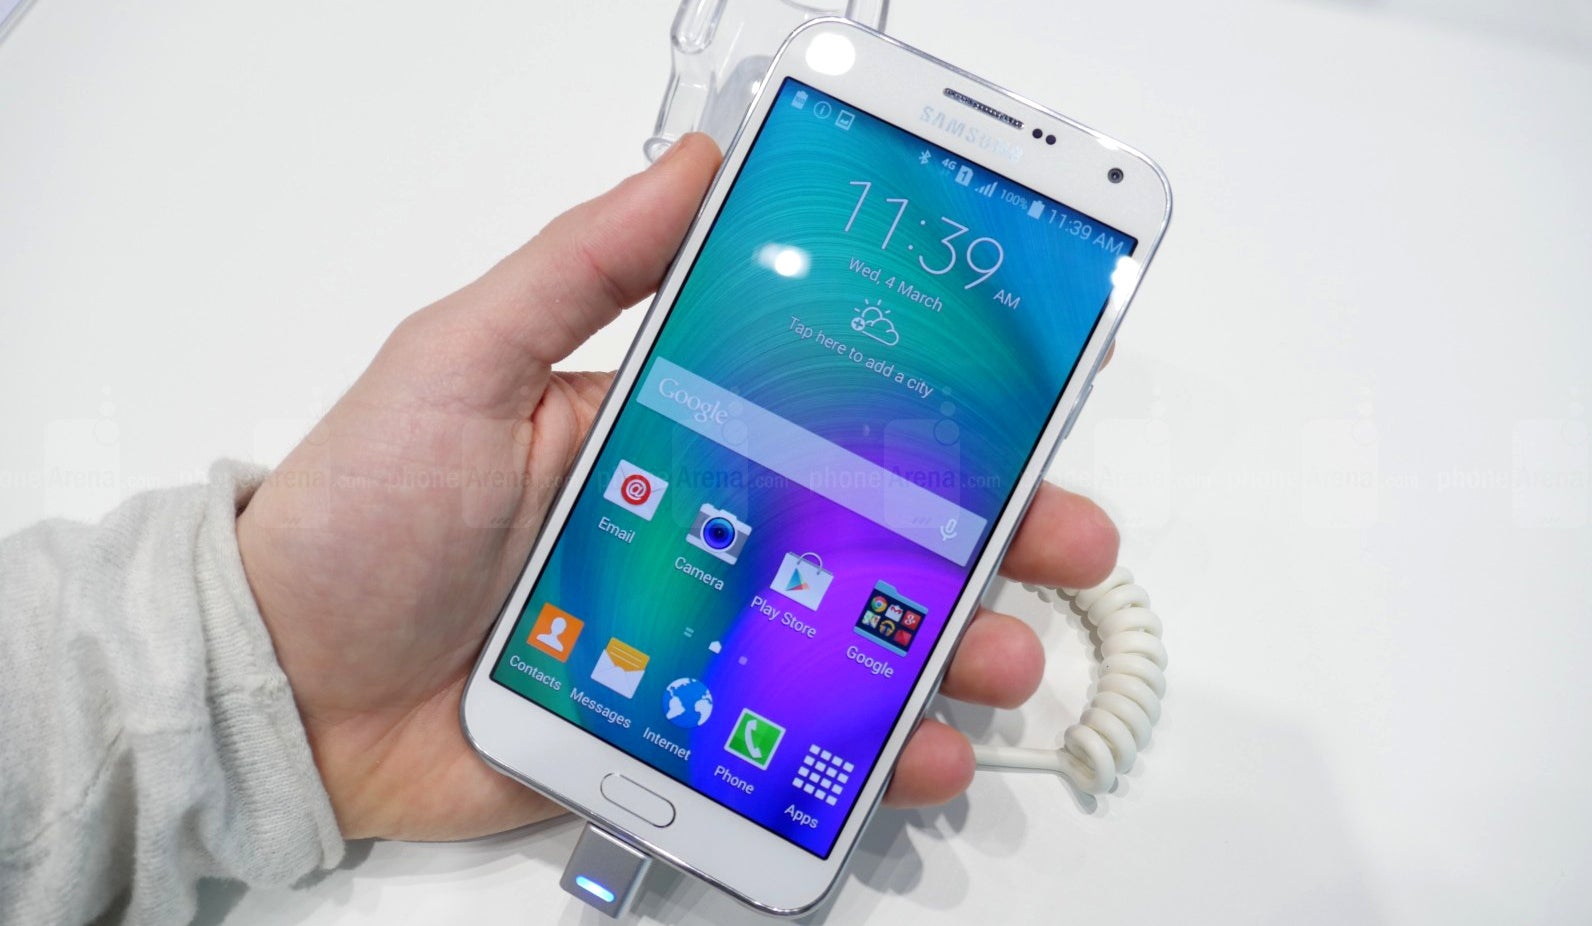 Samsung Galaxy E7 hands-on: a decent mid-ranger